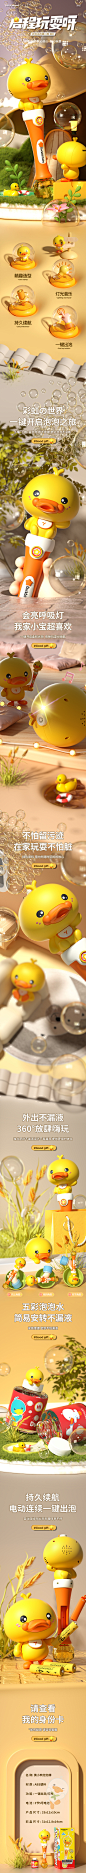 黄小鸭泡泡棒-790-黄色